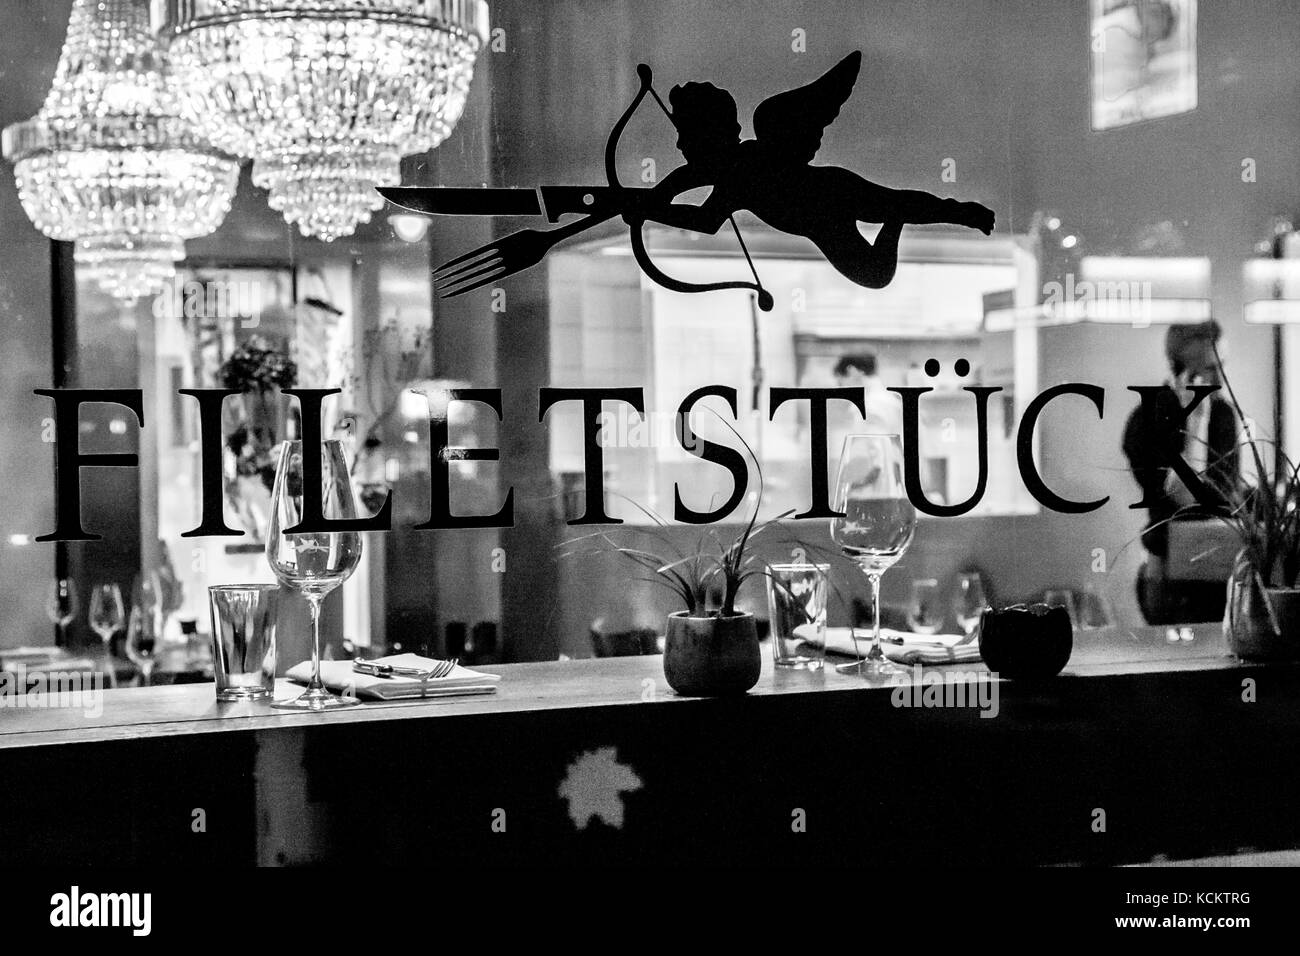 'Pedazo de sirloin' es el nombre traducido de un restaurante alemán Foto de stock